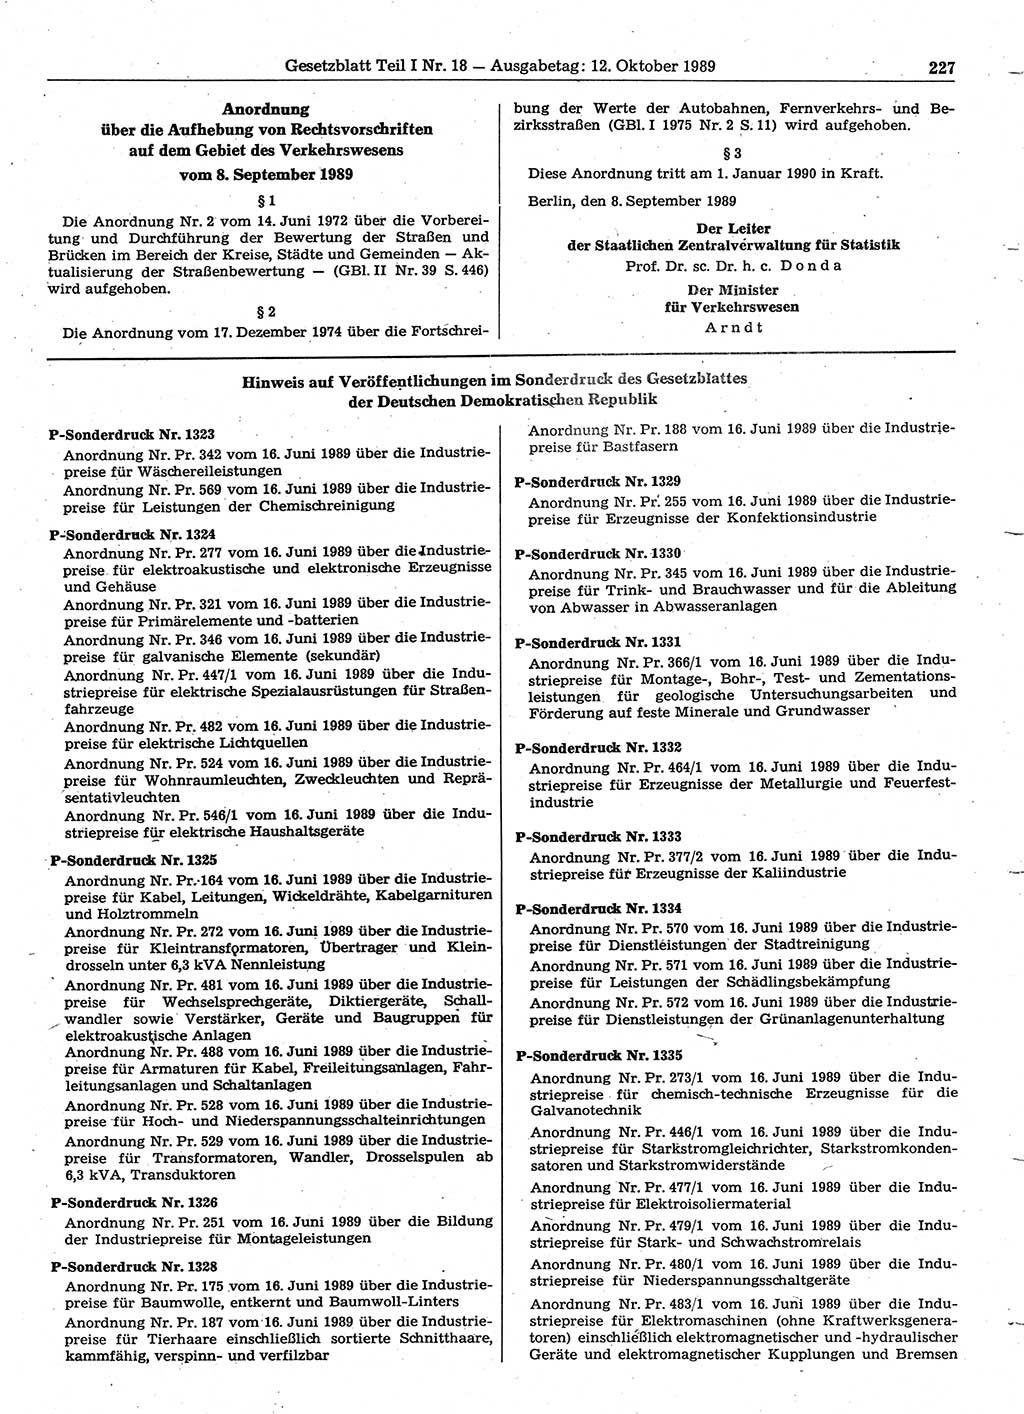 Gesetzblatt (GBl.) der Deutschen Demokratischen Republik (DDR) Teil Ⅰ 1989, Seite 227 (GBl. DDR Ⅰ 1989, S. 227)